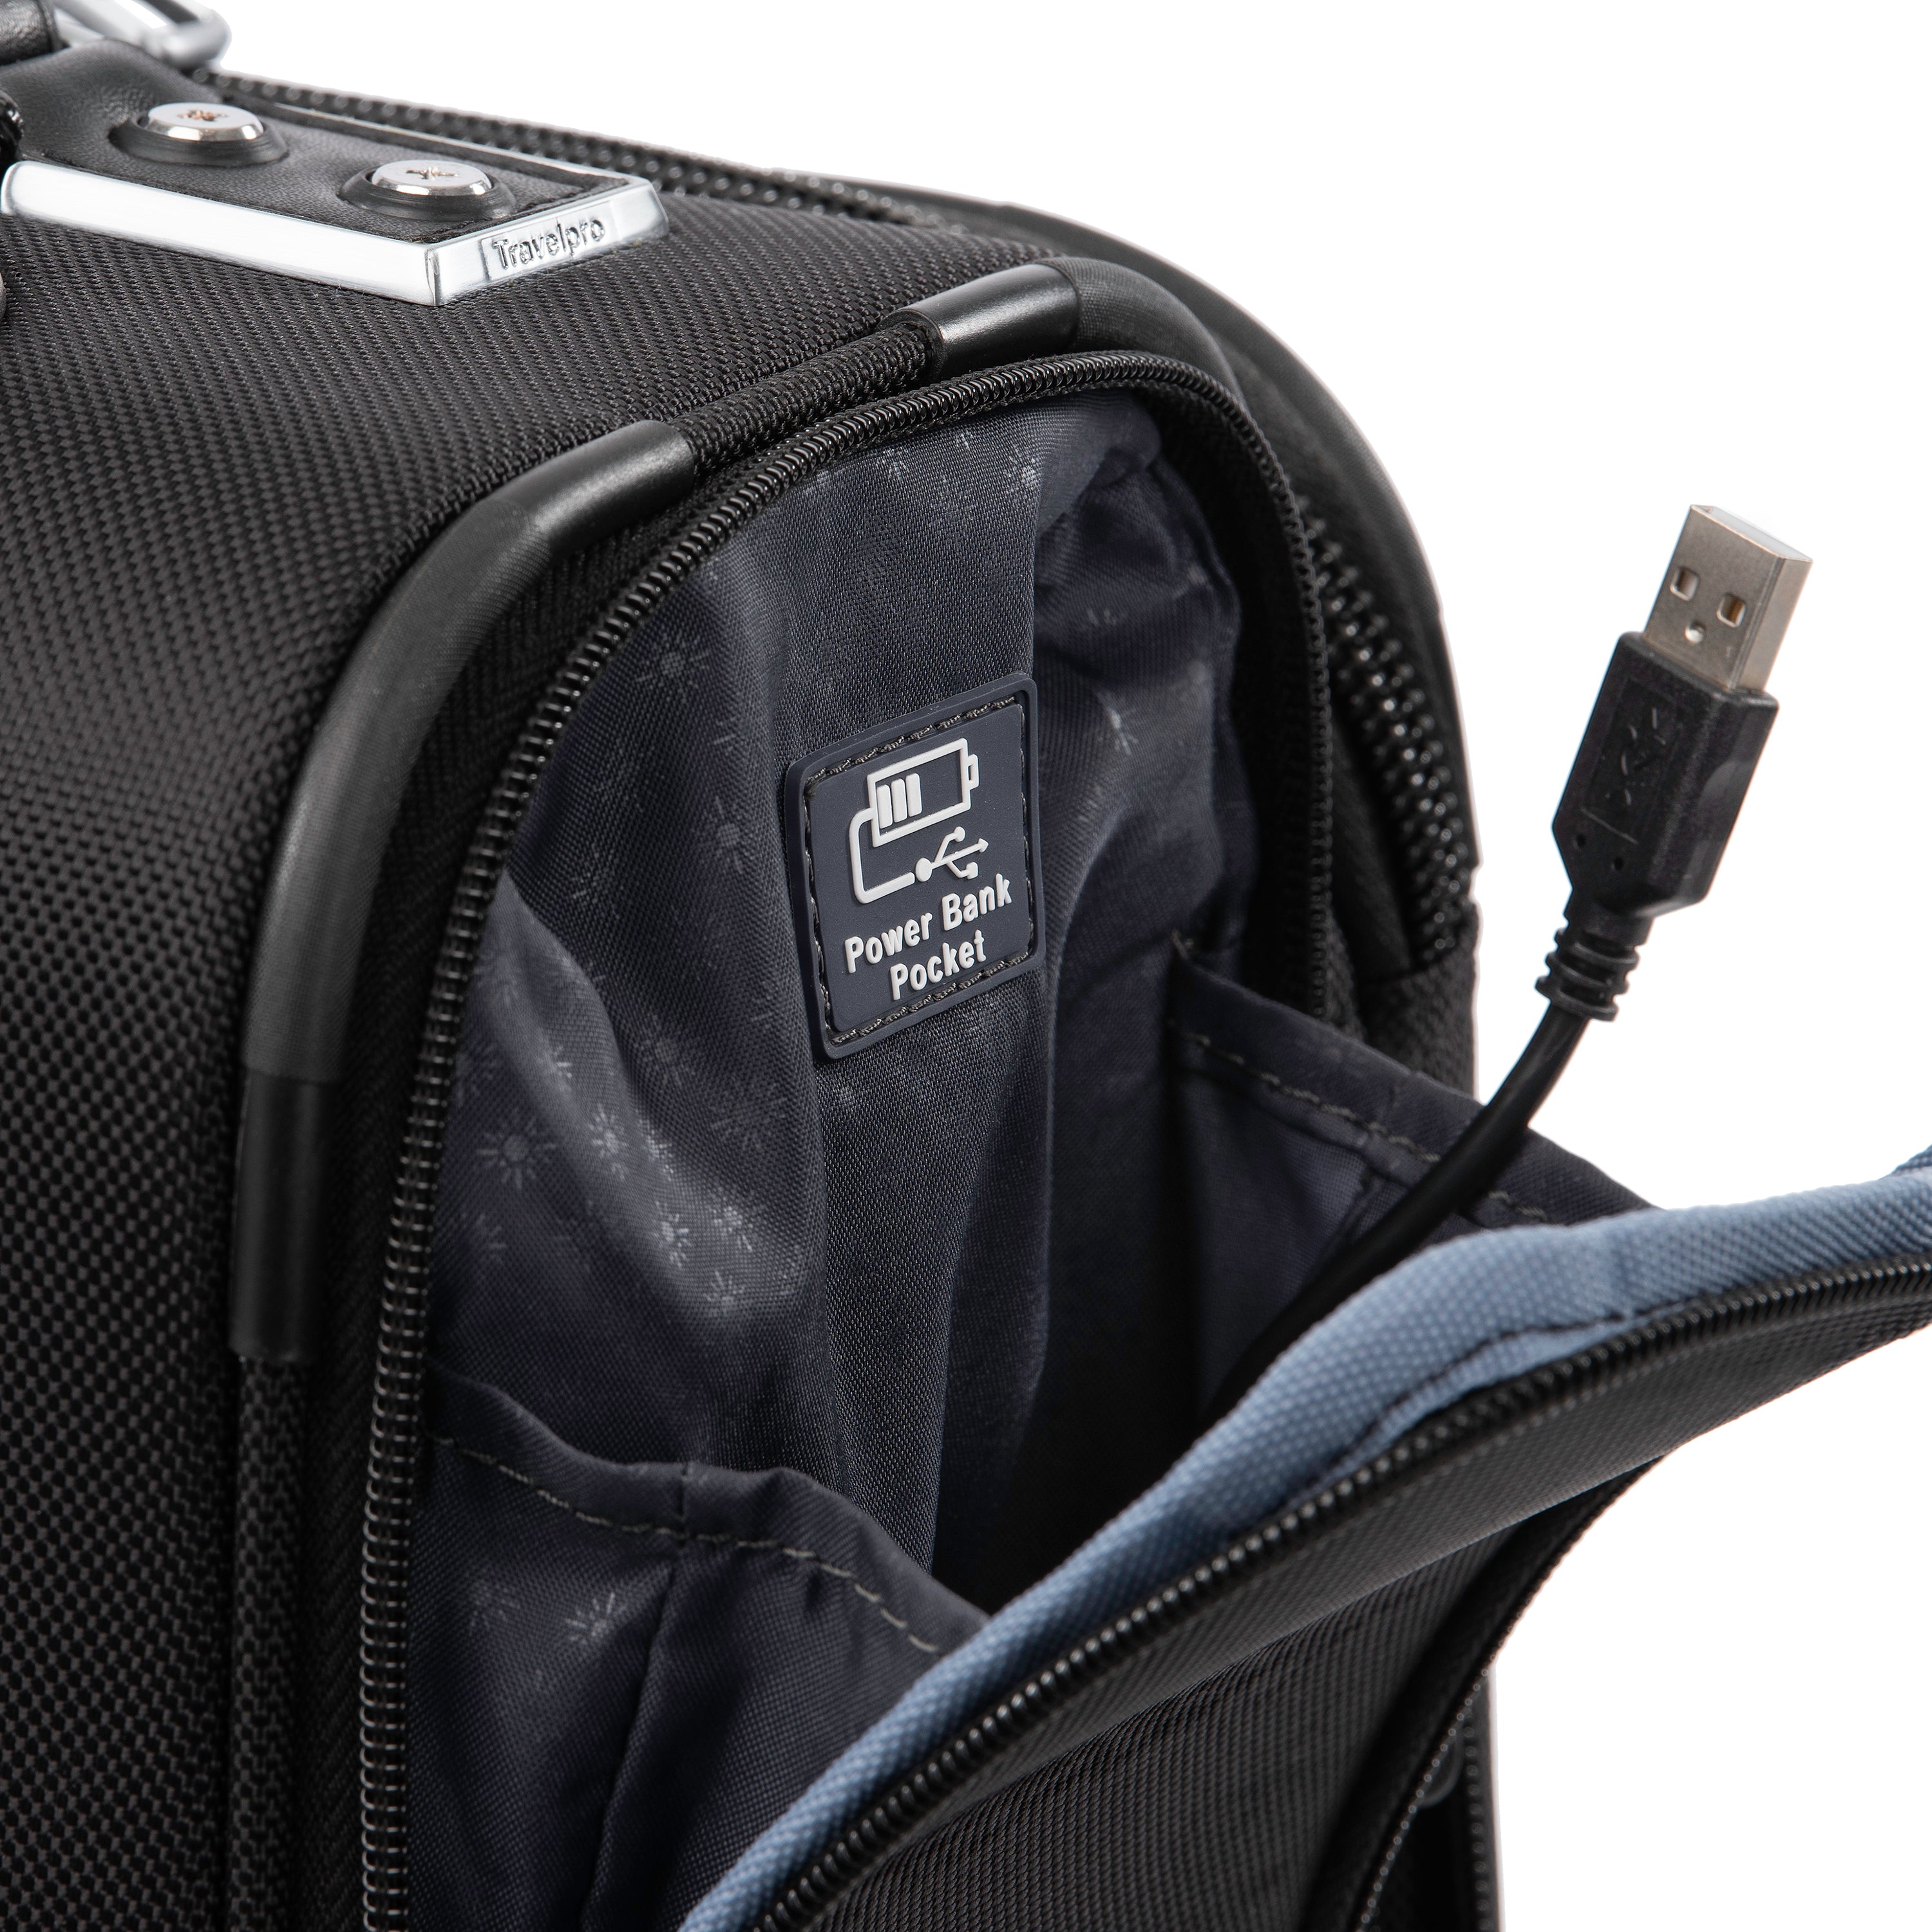 Travelpro Platinum Elite Softside Expandable Luggage, 2 Wheel Upright Suitcase, USB Port, Men and Women U3